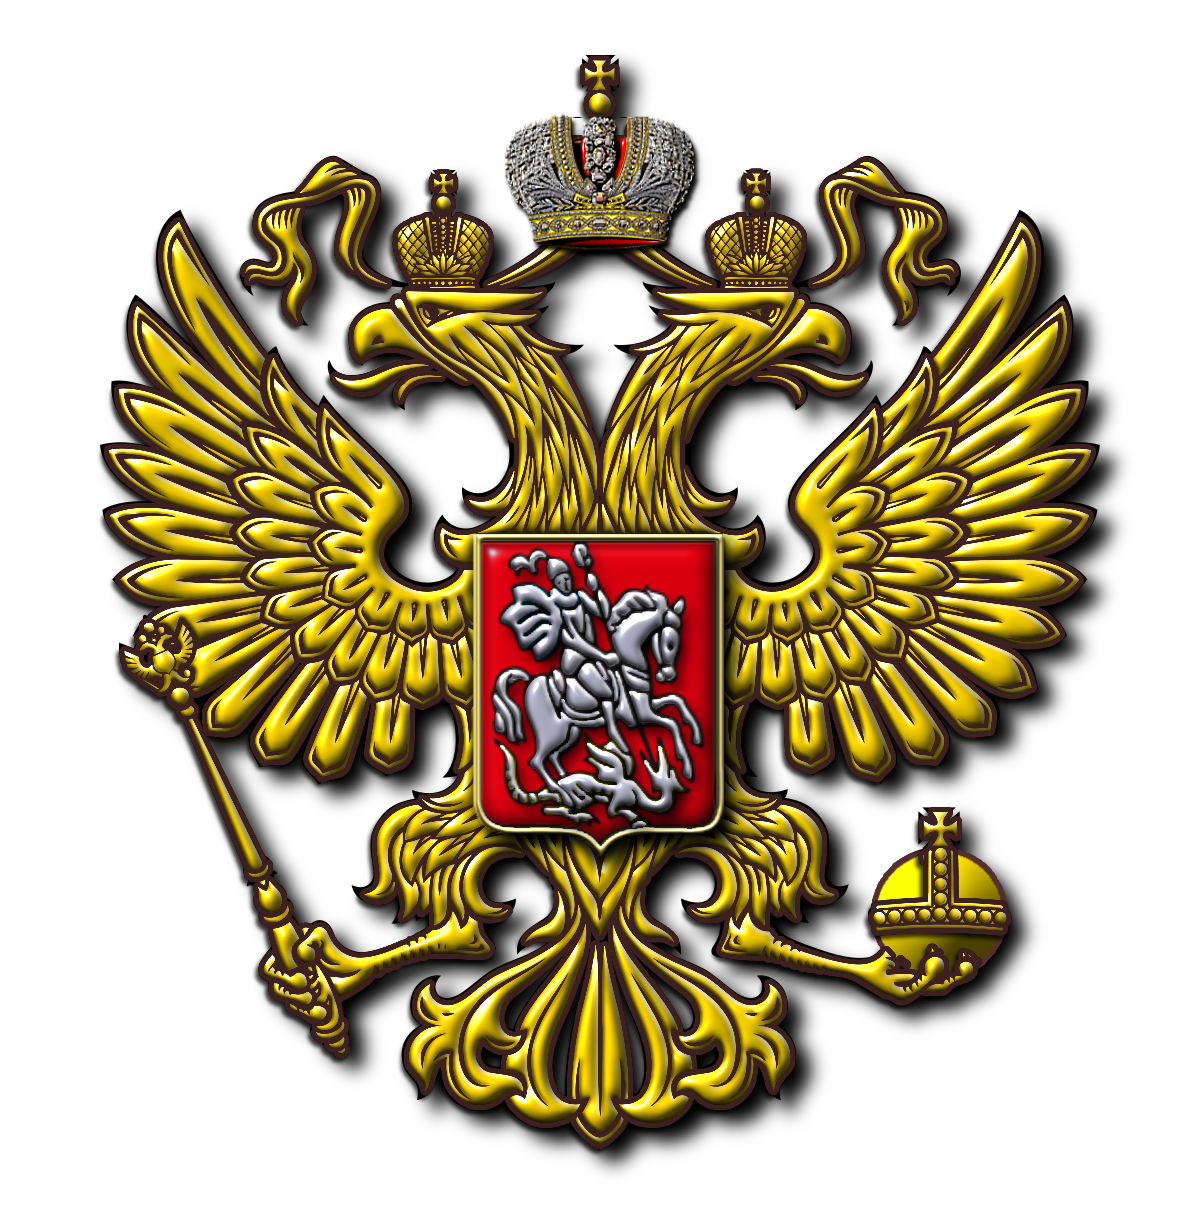 俄罗斯国徽